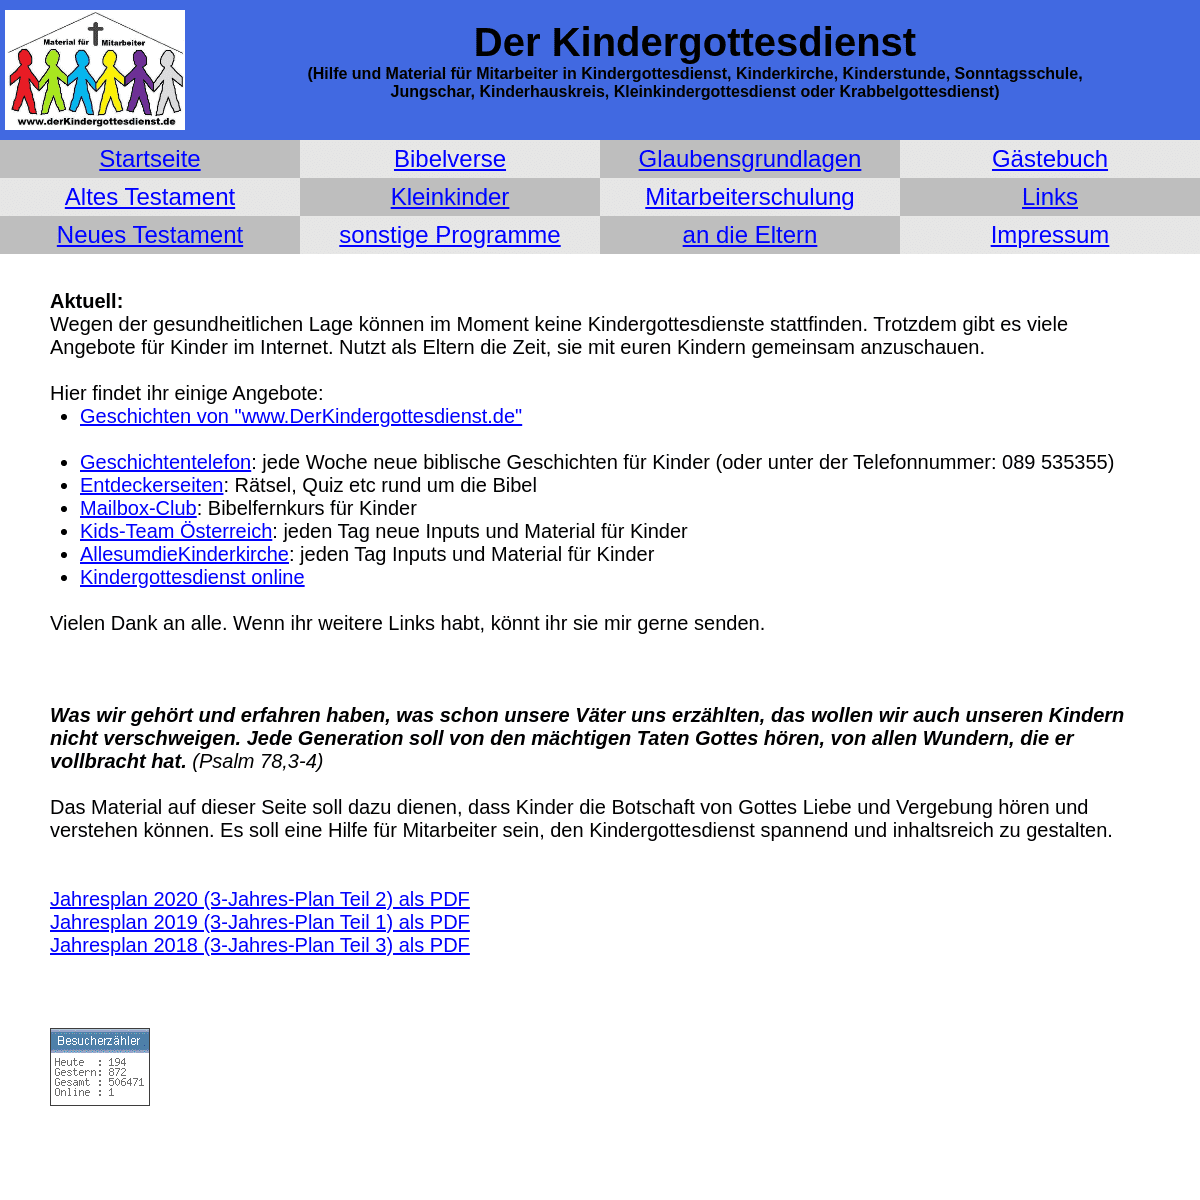 A complete backup of derkindergottesdienst.de